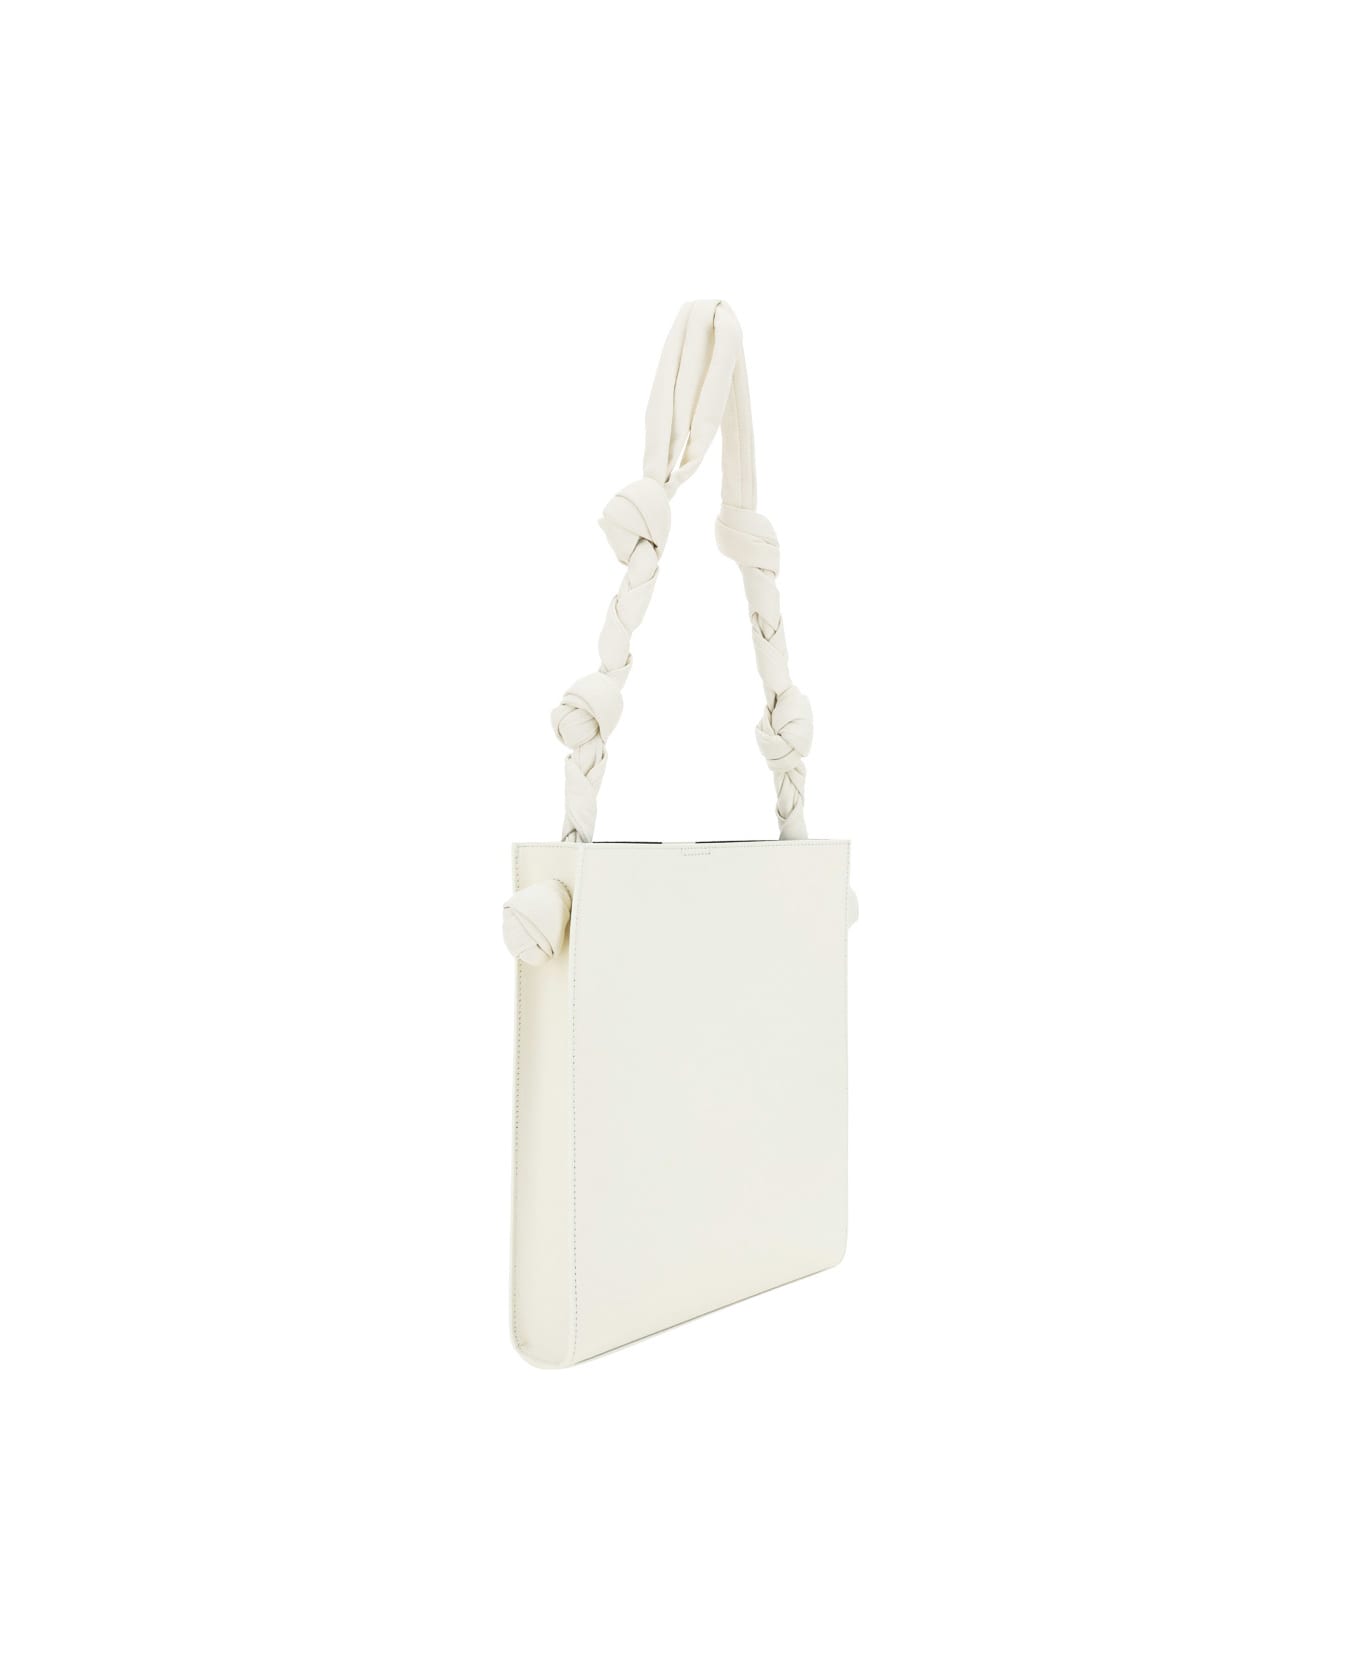 Jil Sander Natural Medium Tangle Shoulder Bag - Bianco